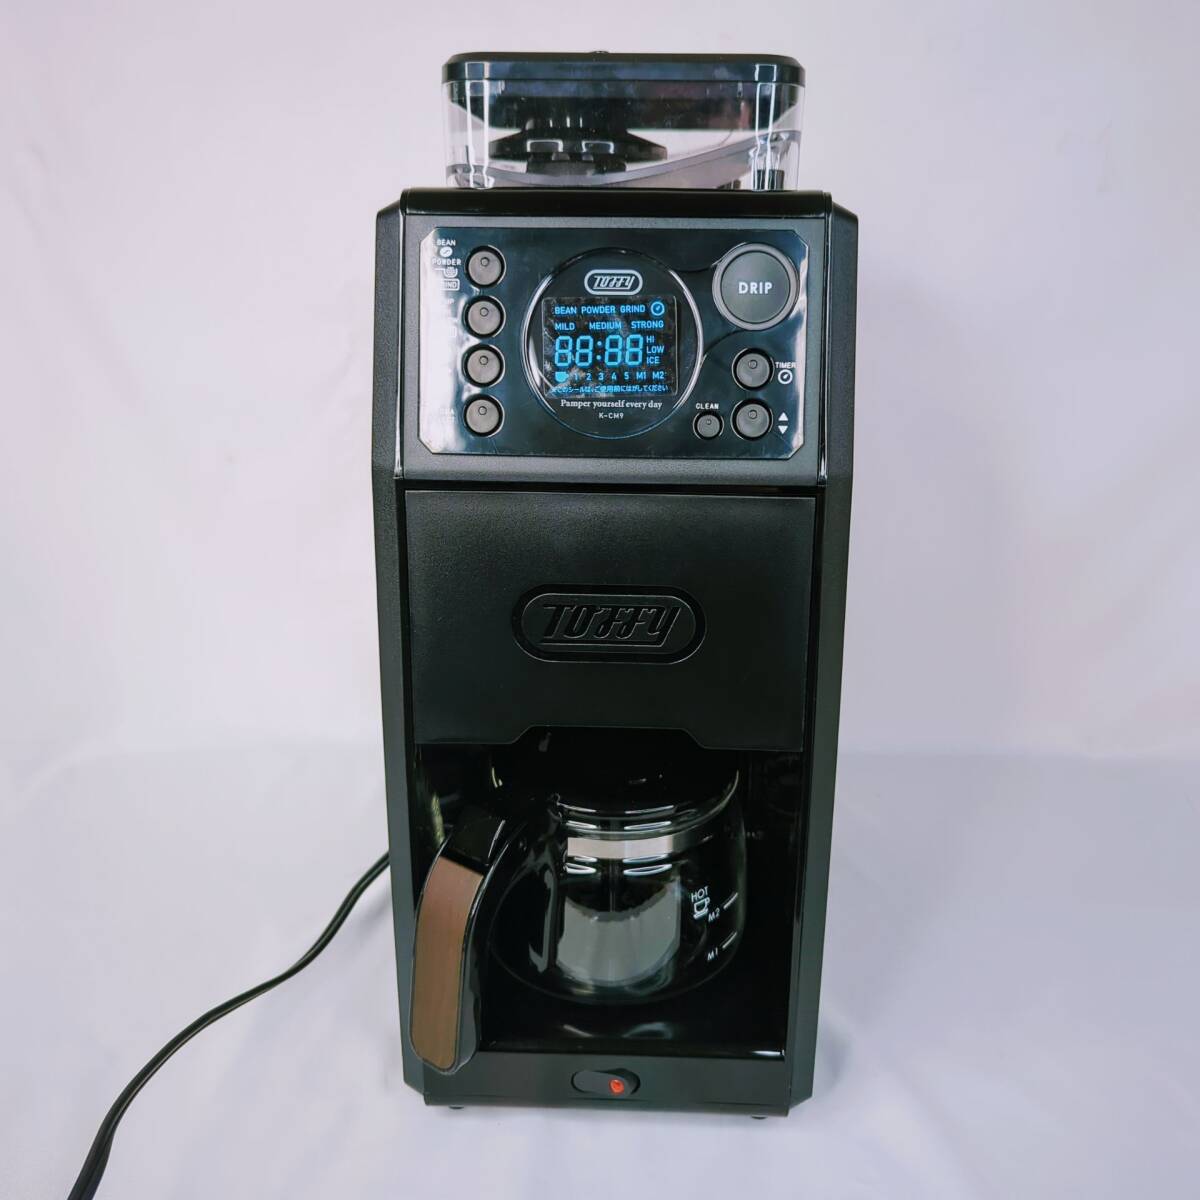 【ジャンク】Toffy K-CM9-RB 全自動コーヒーメーカー